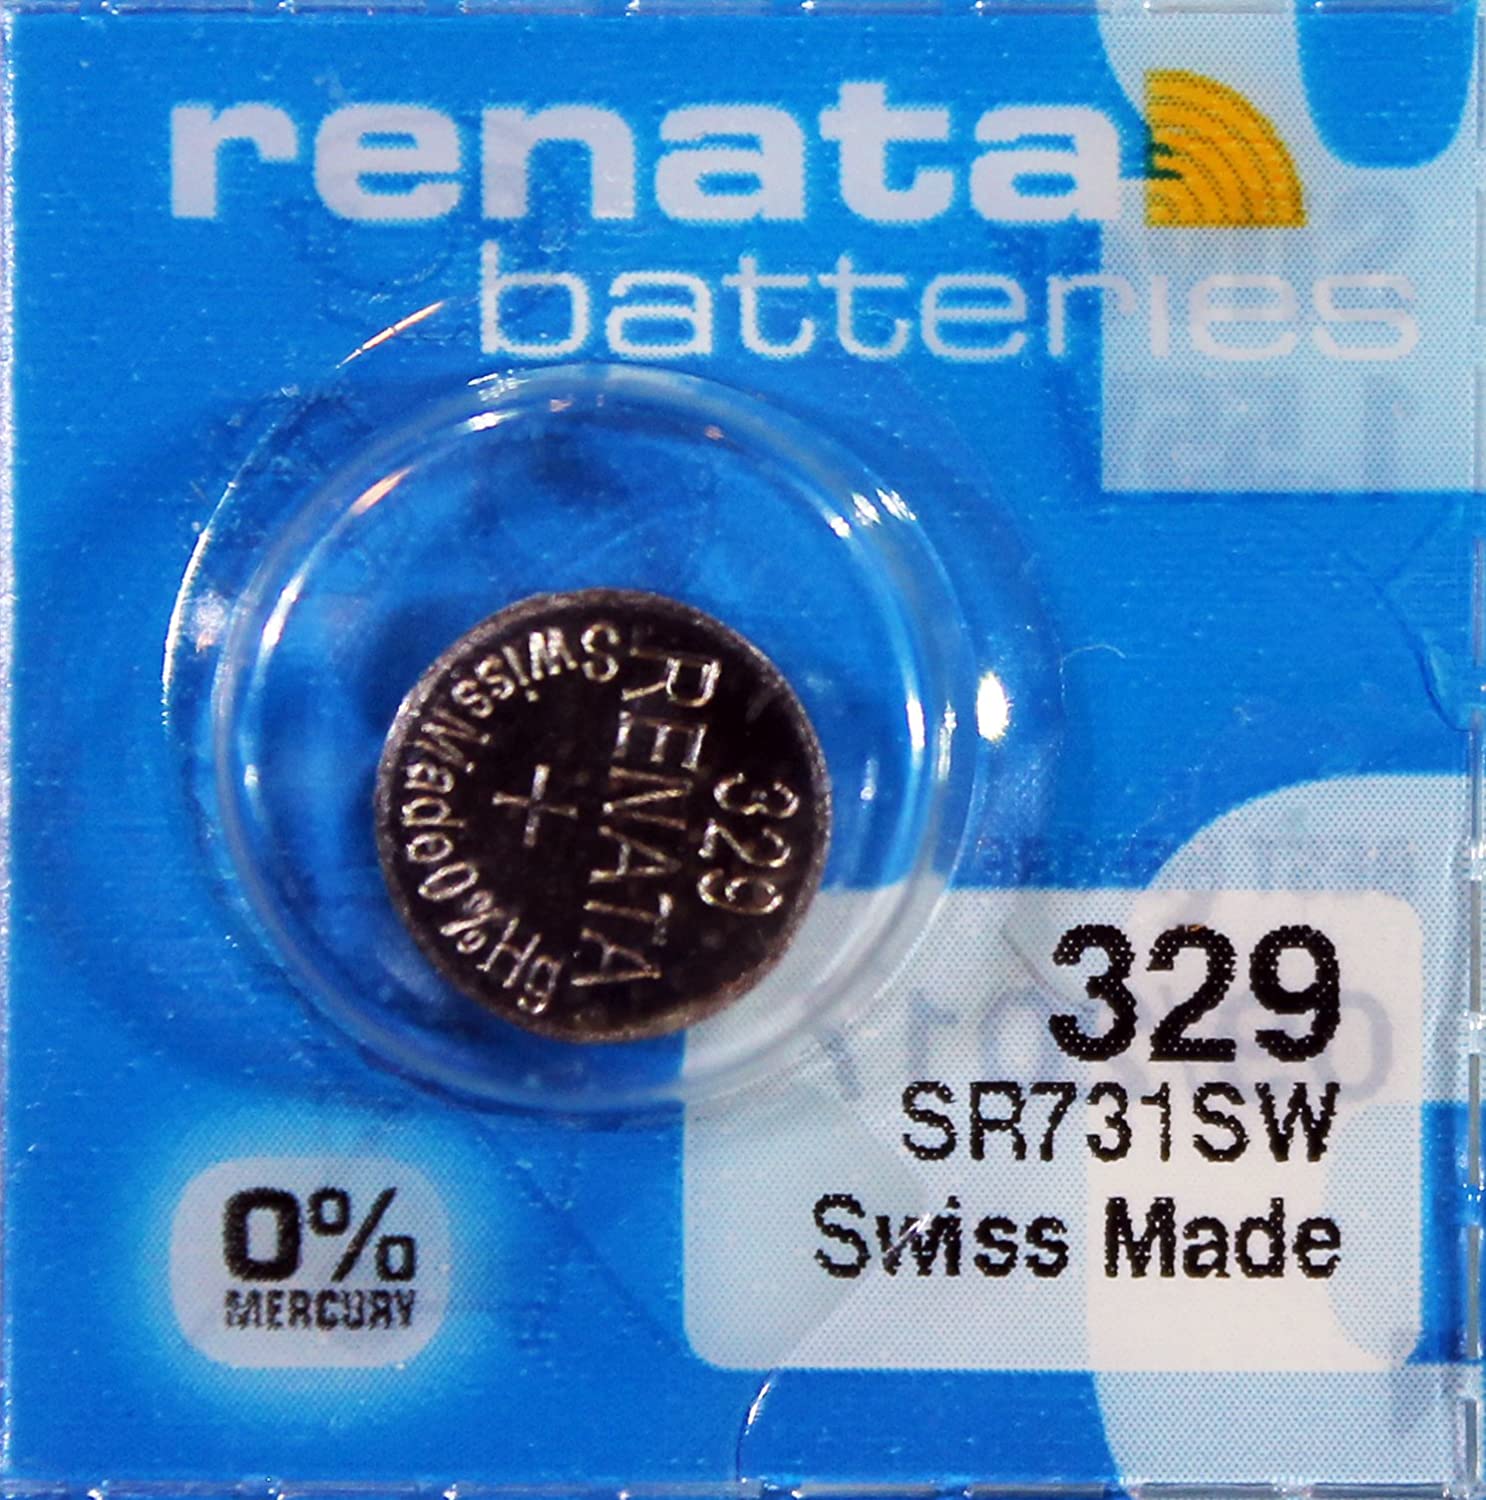 [ボタン電池] renata SR731SW 1個 バラ売り 329 コイン型 酸化銀ボタン電池 時計用電池 電子機器など(3452-01)Y